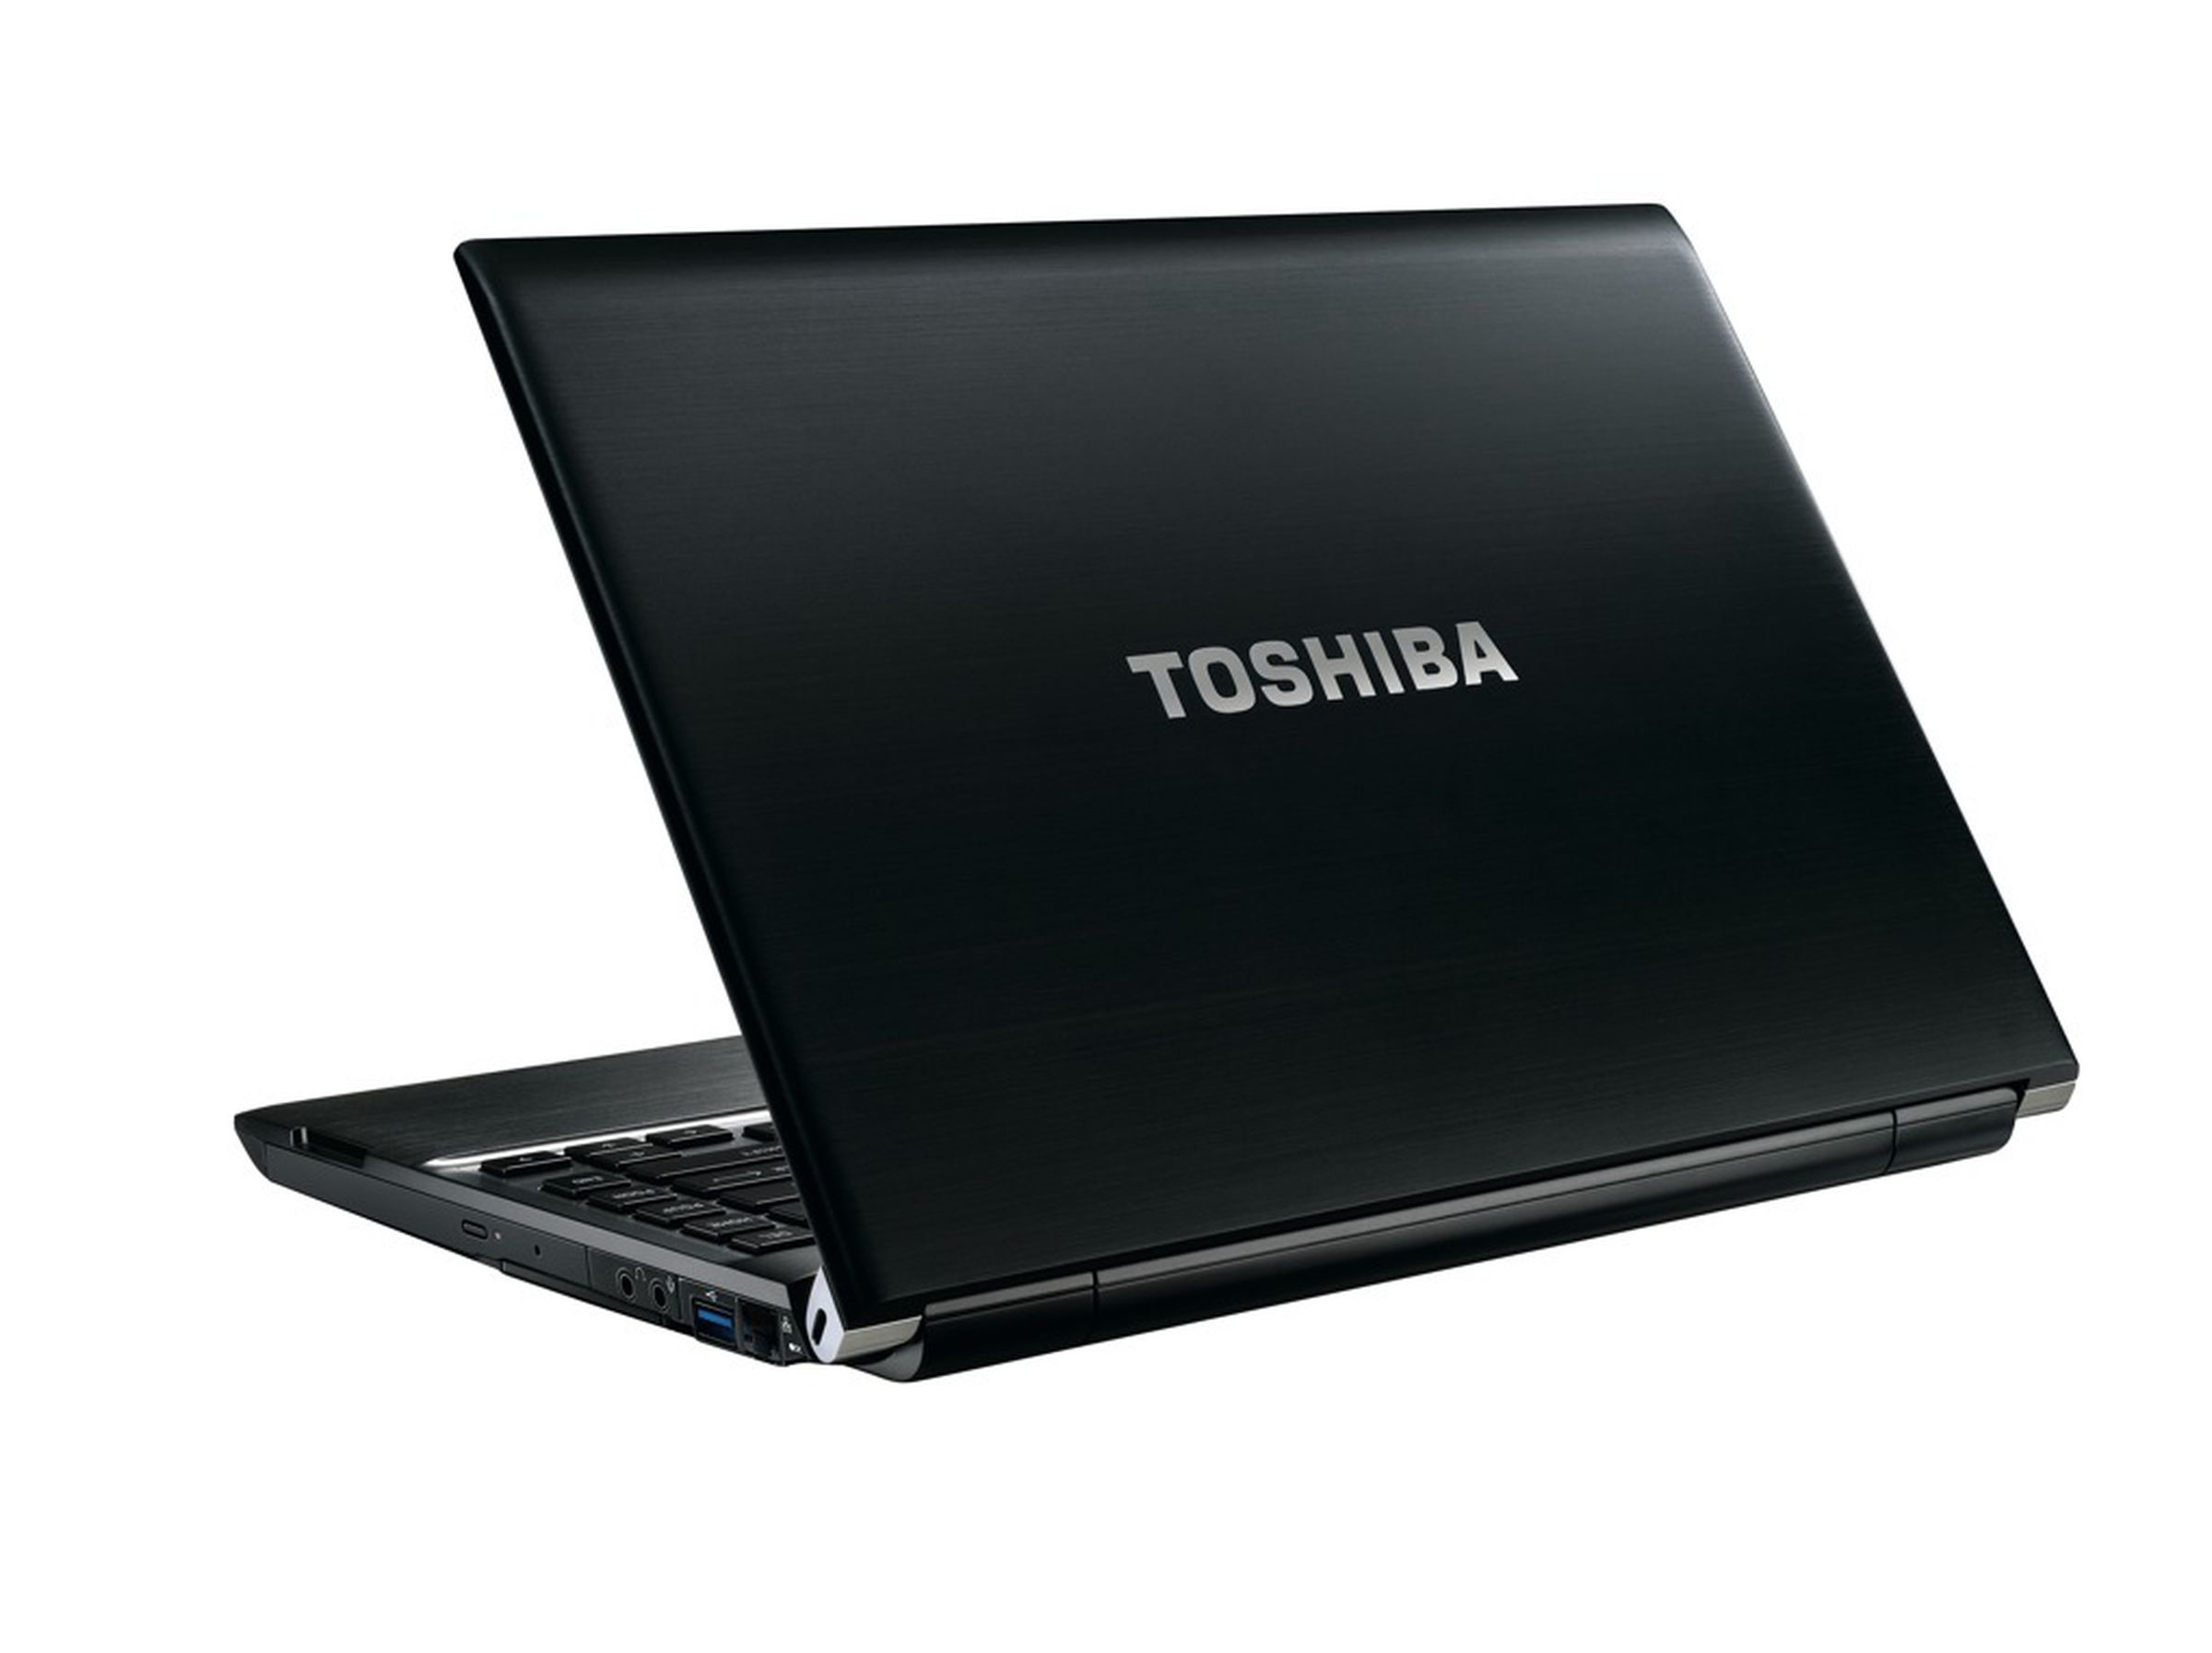 Toshiba Portege R930, Tecra R940 and Tecra R950 images